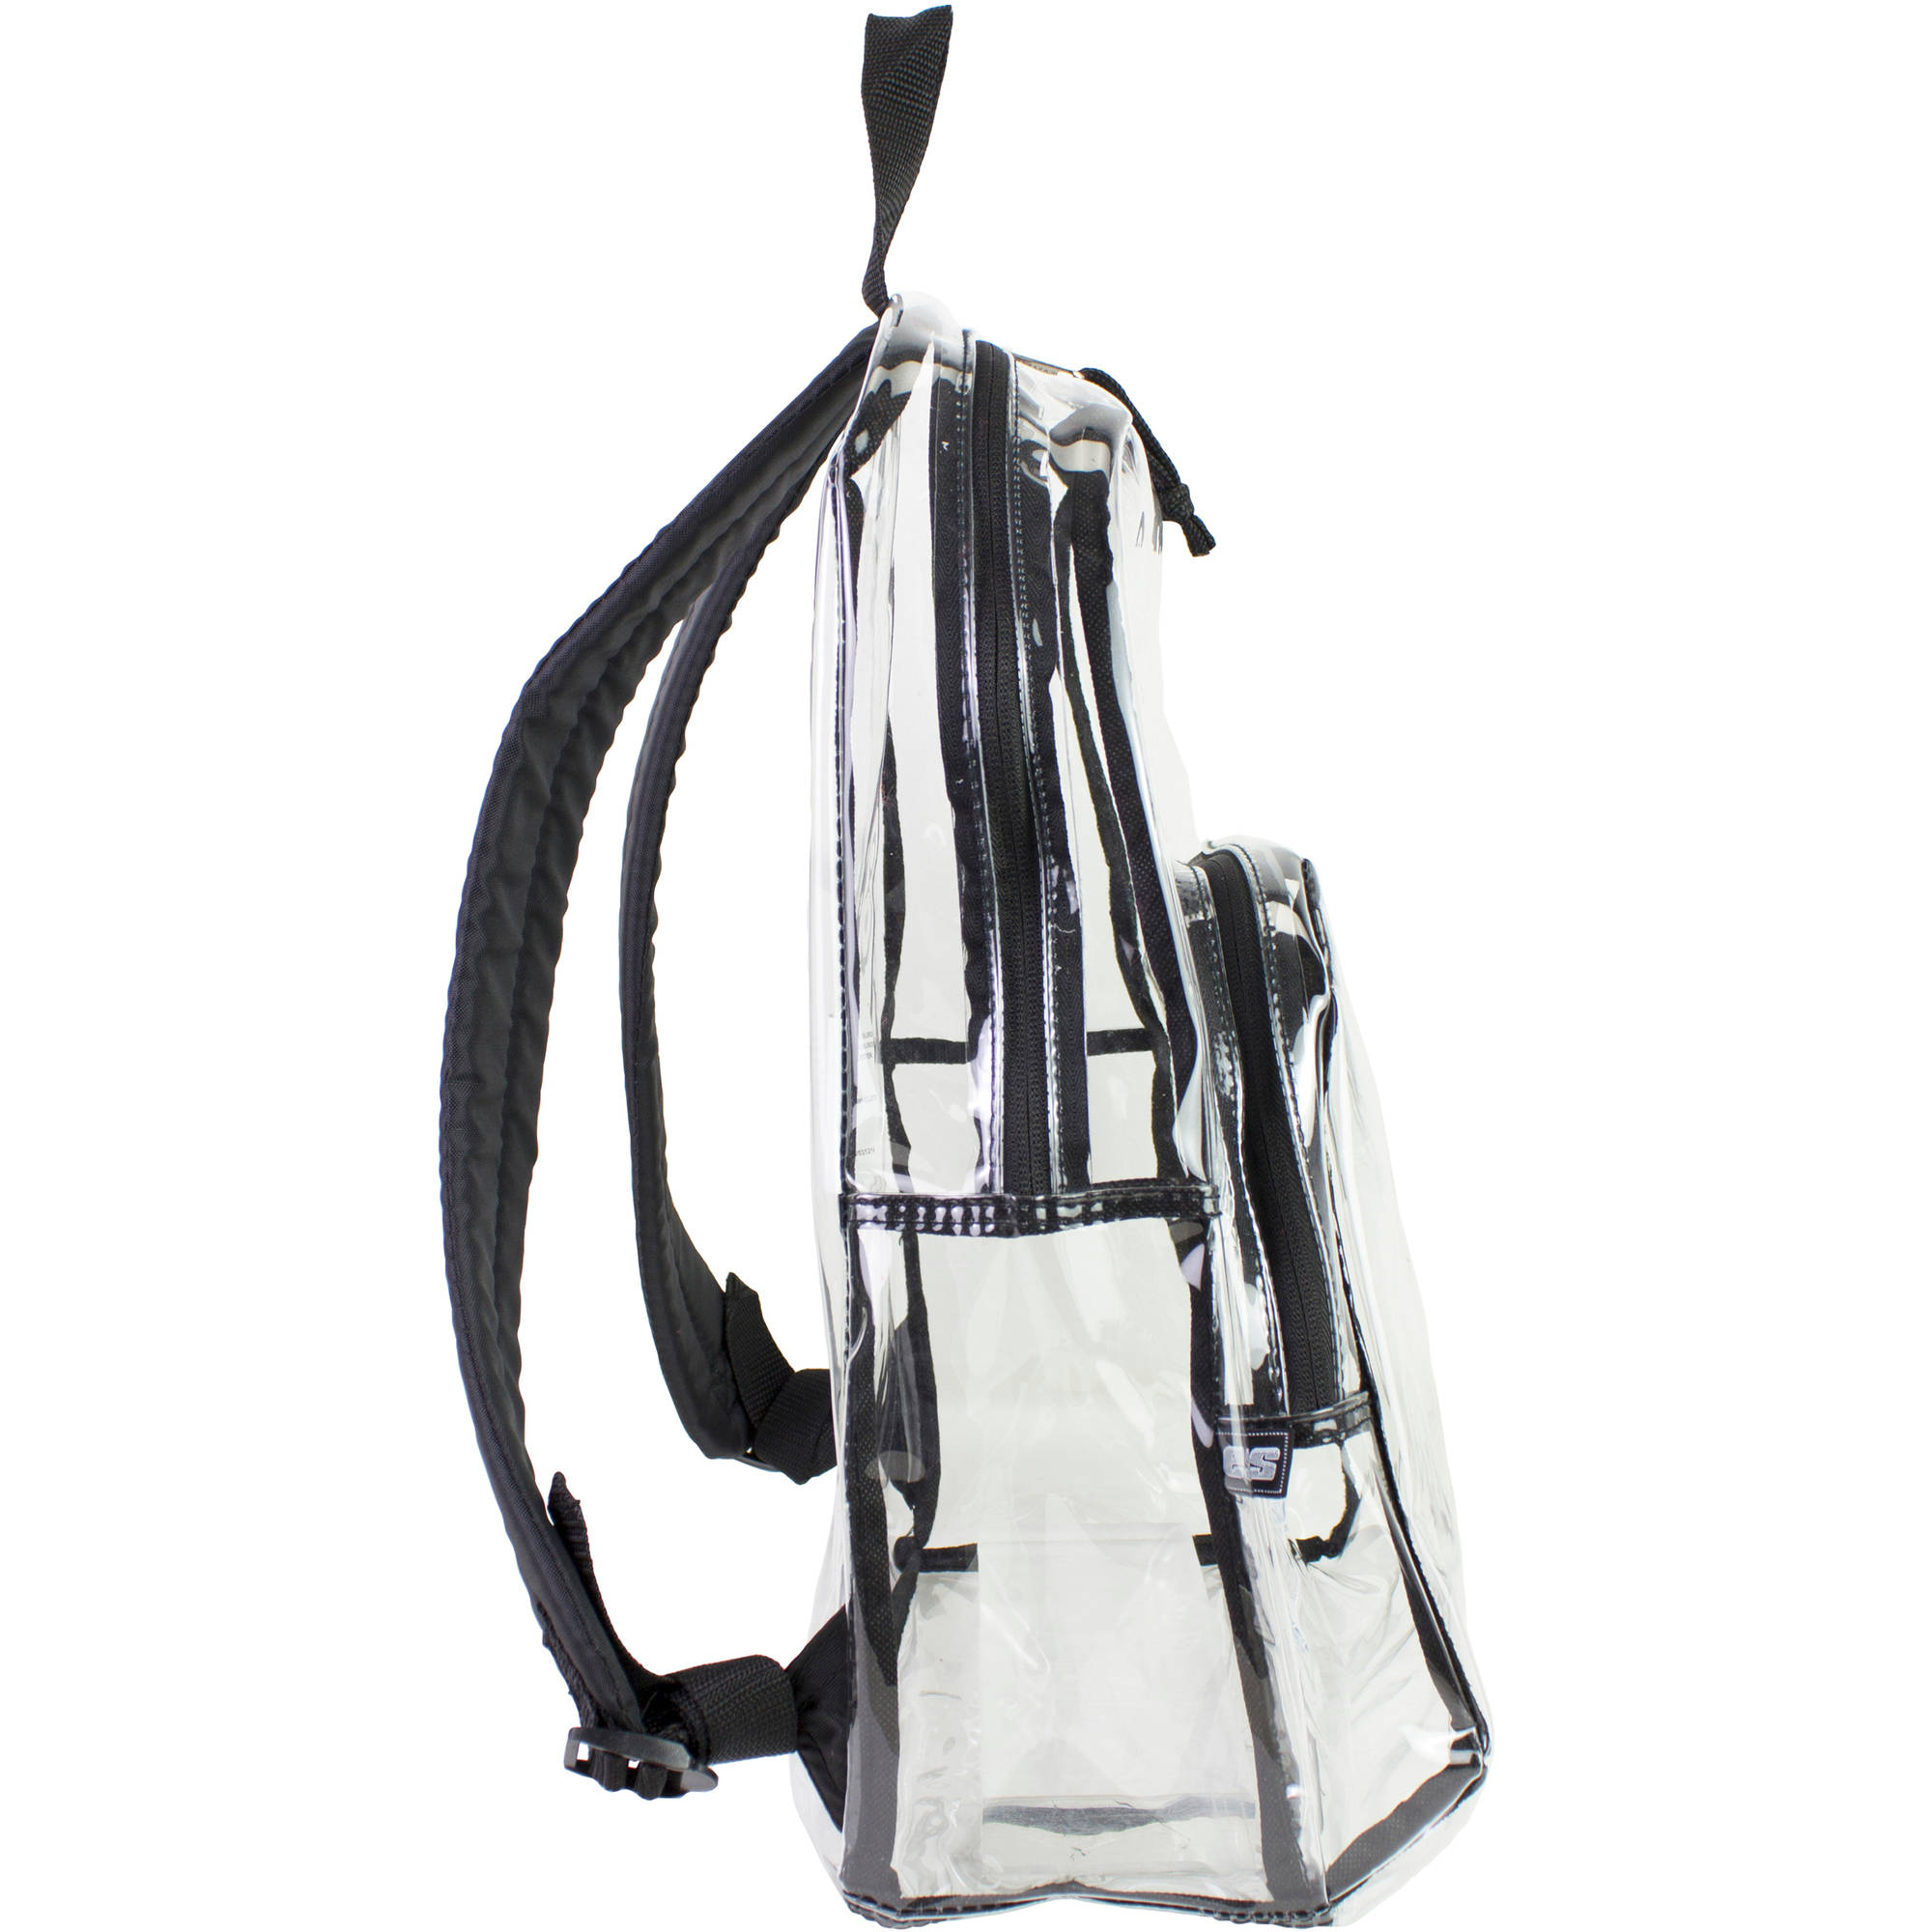 Eastsport Clear Backpack with Front Pocket and Adjustable Padded Shoulder Straps - image 3 of 4